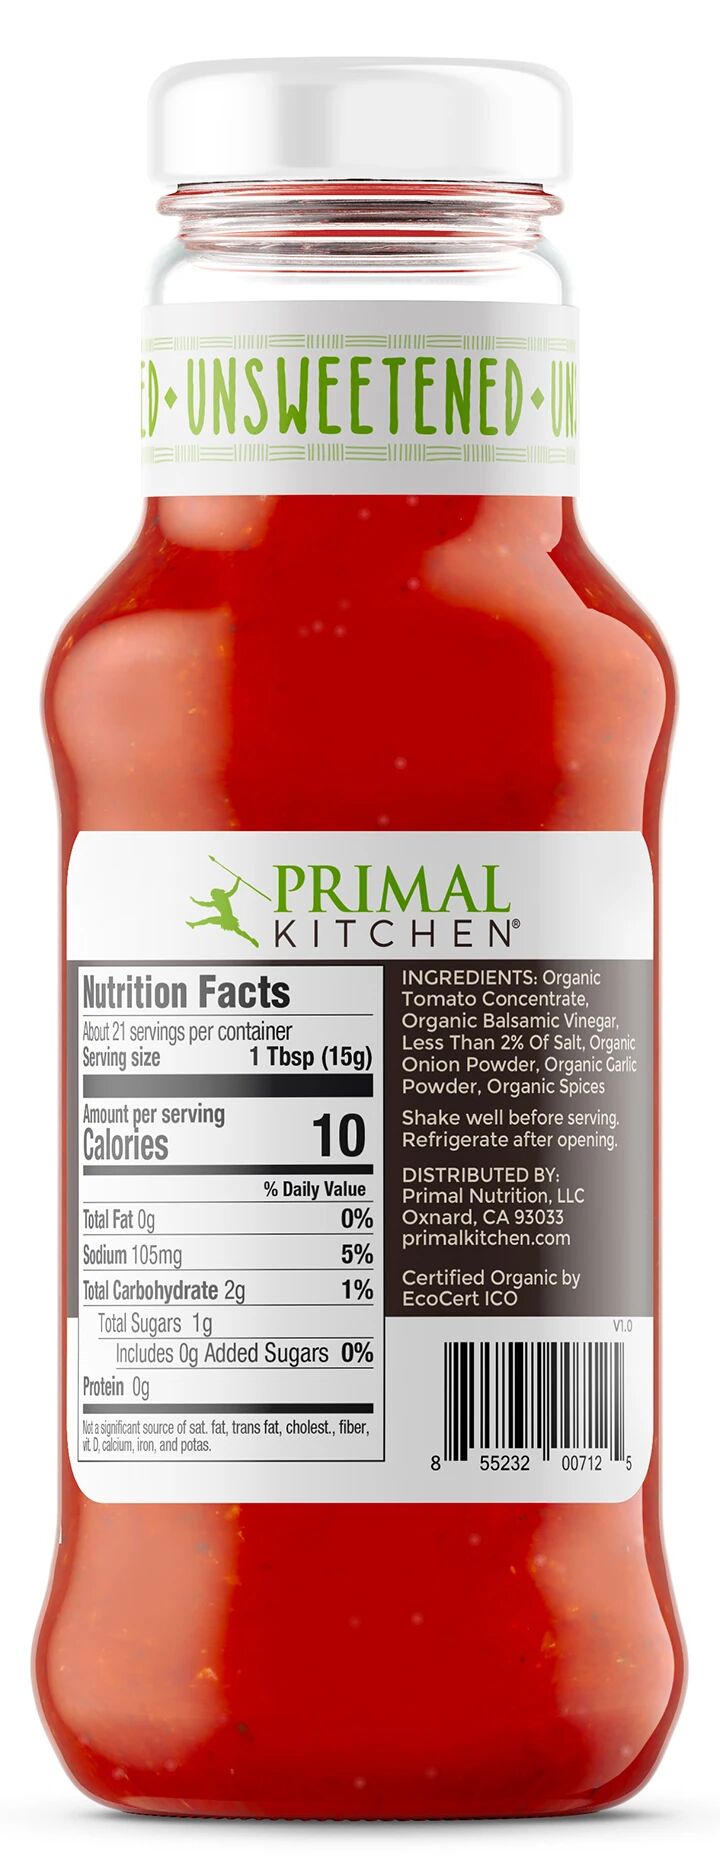 Primal Kitchen Unsweetened Ketchup, Organic 11.3 oz